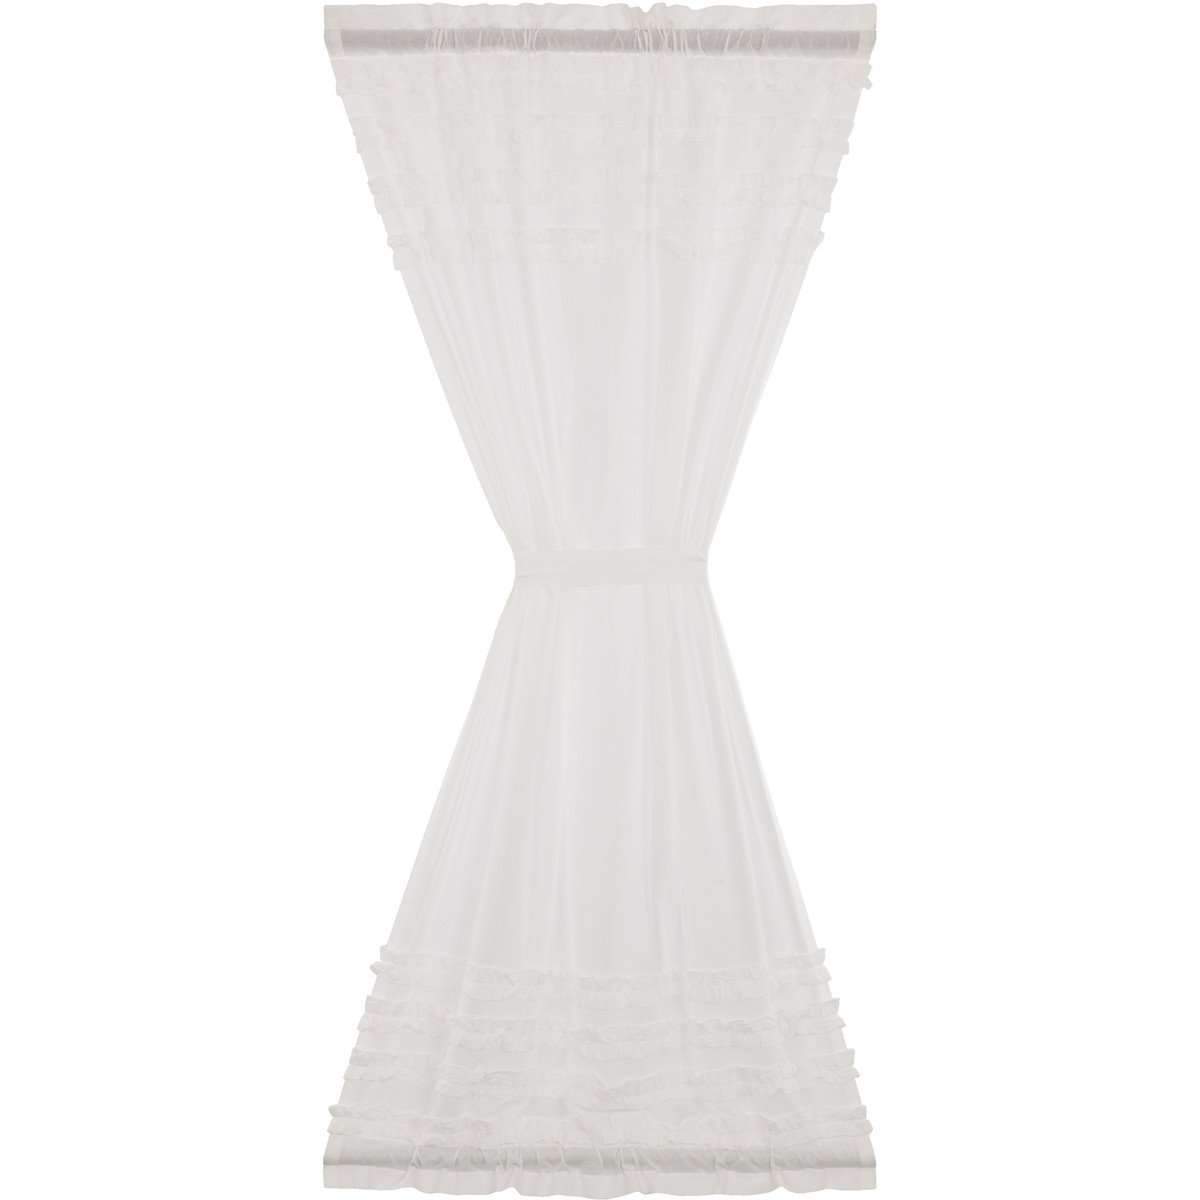 White Ruffled Sheer Petticoat Door Panel 72"x40" curtain VHC Brands 